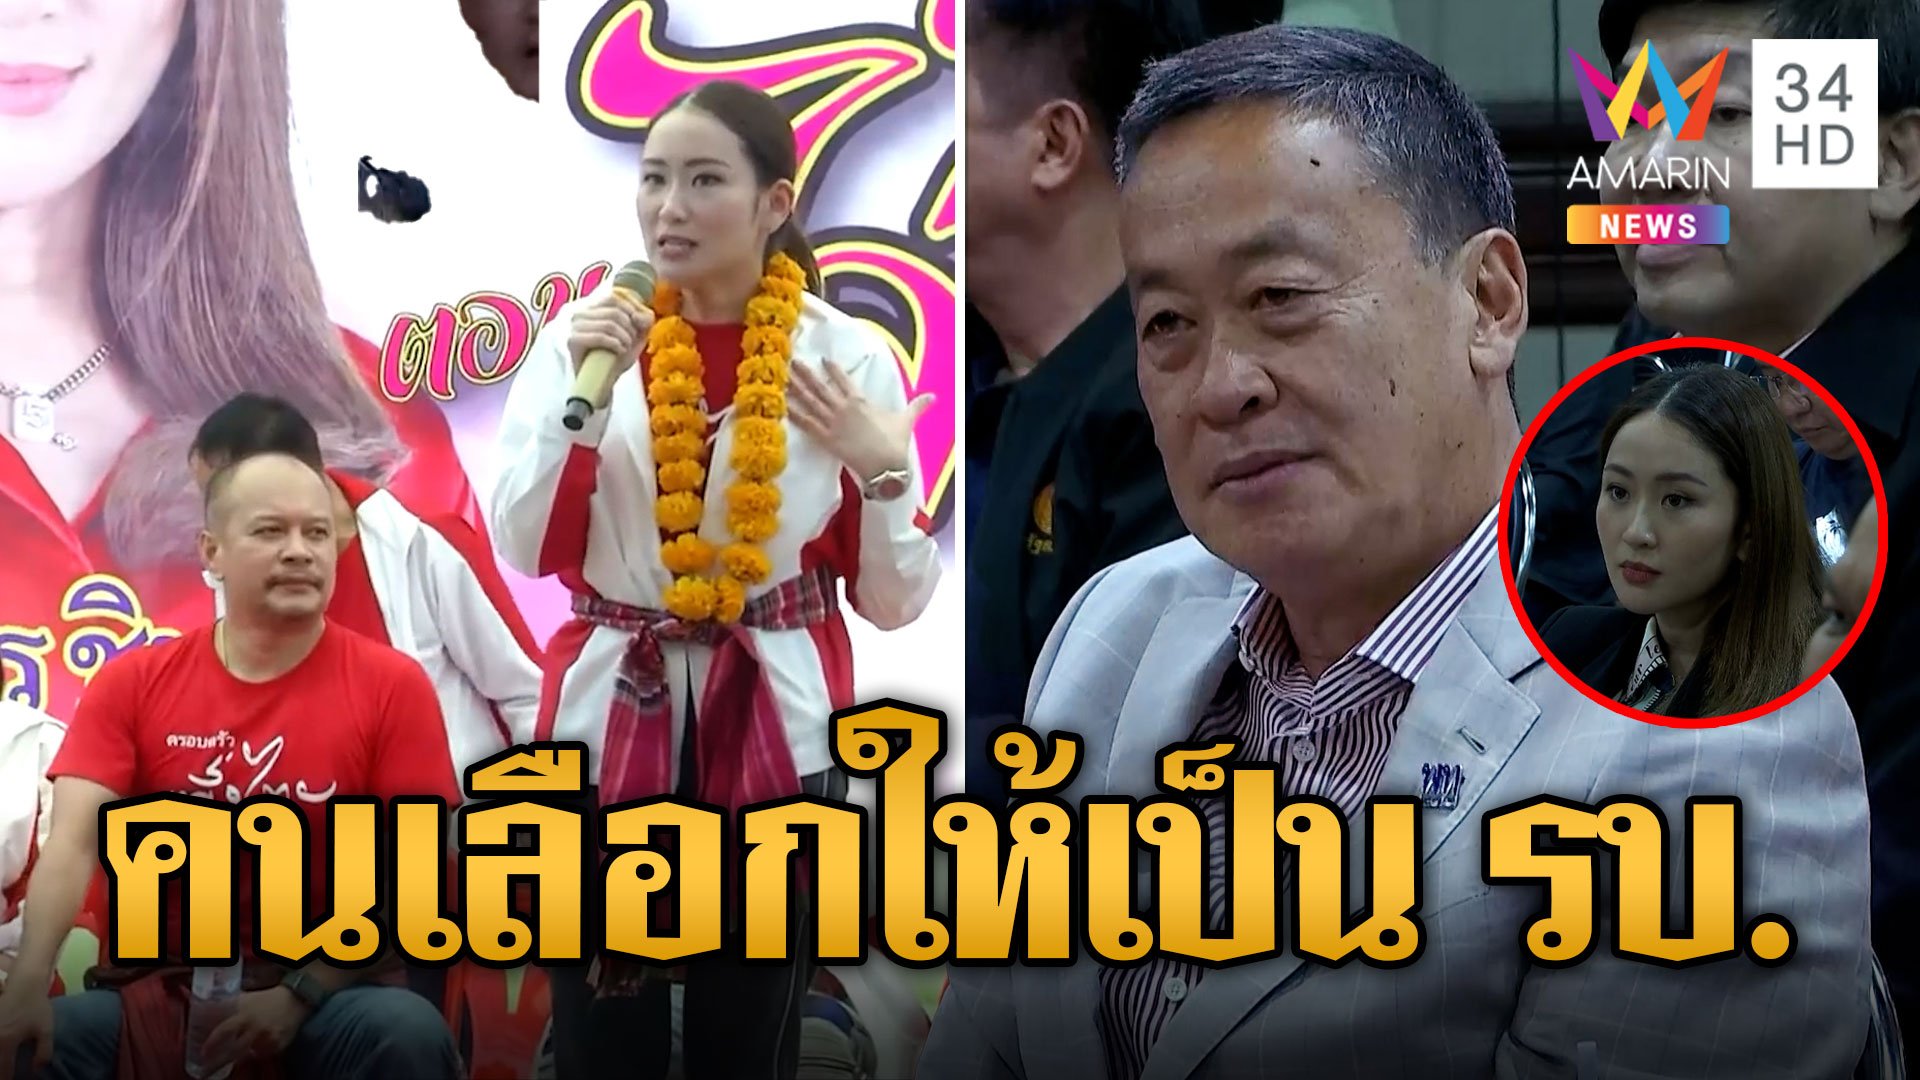 “เศรษฐา-อุ๊งอิ๊งค์” ร่วมประชุม สส.เพื่อไทย โวชาวบ้านเลือกตั้งให้มาเป็นรัฐบาล | ข่าวอรุณอมรินทร์ | 9 ส.ค. 66 | AMARIN TVHD34